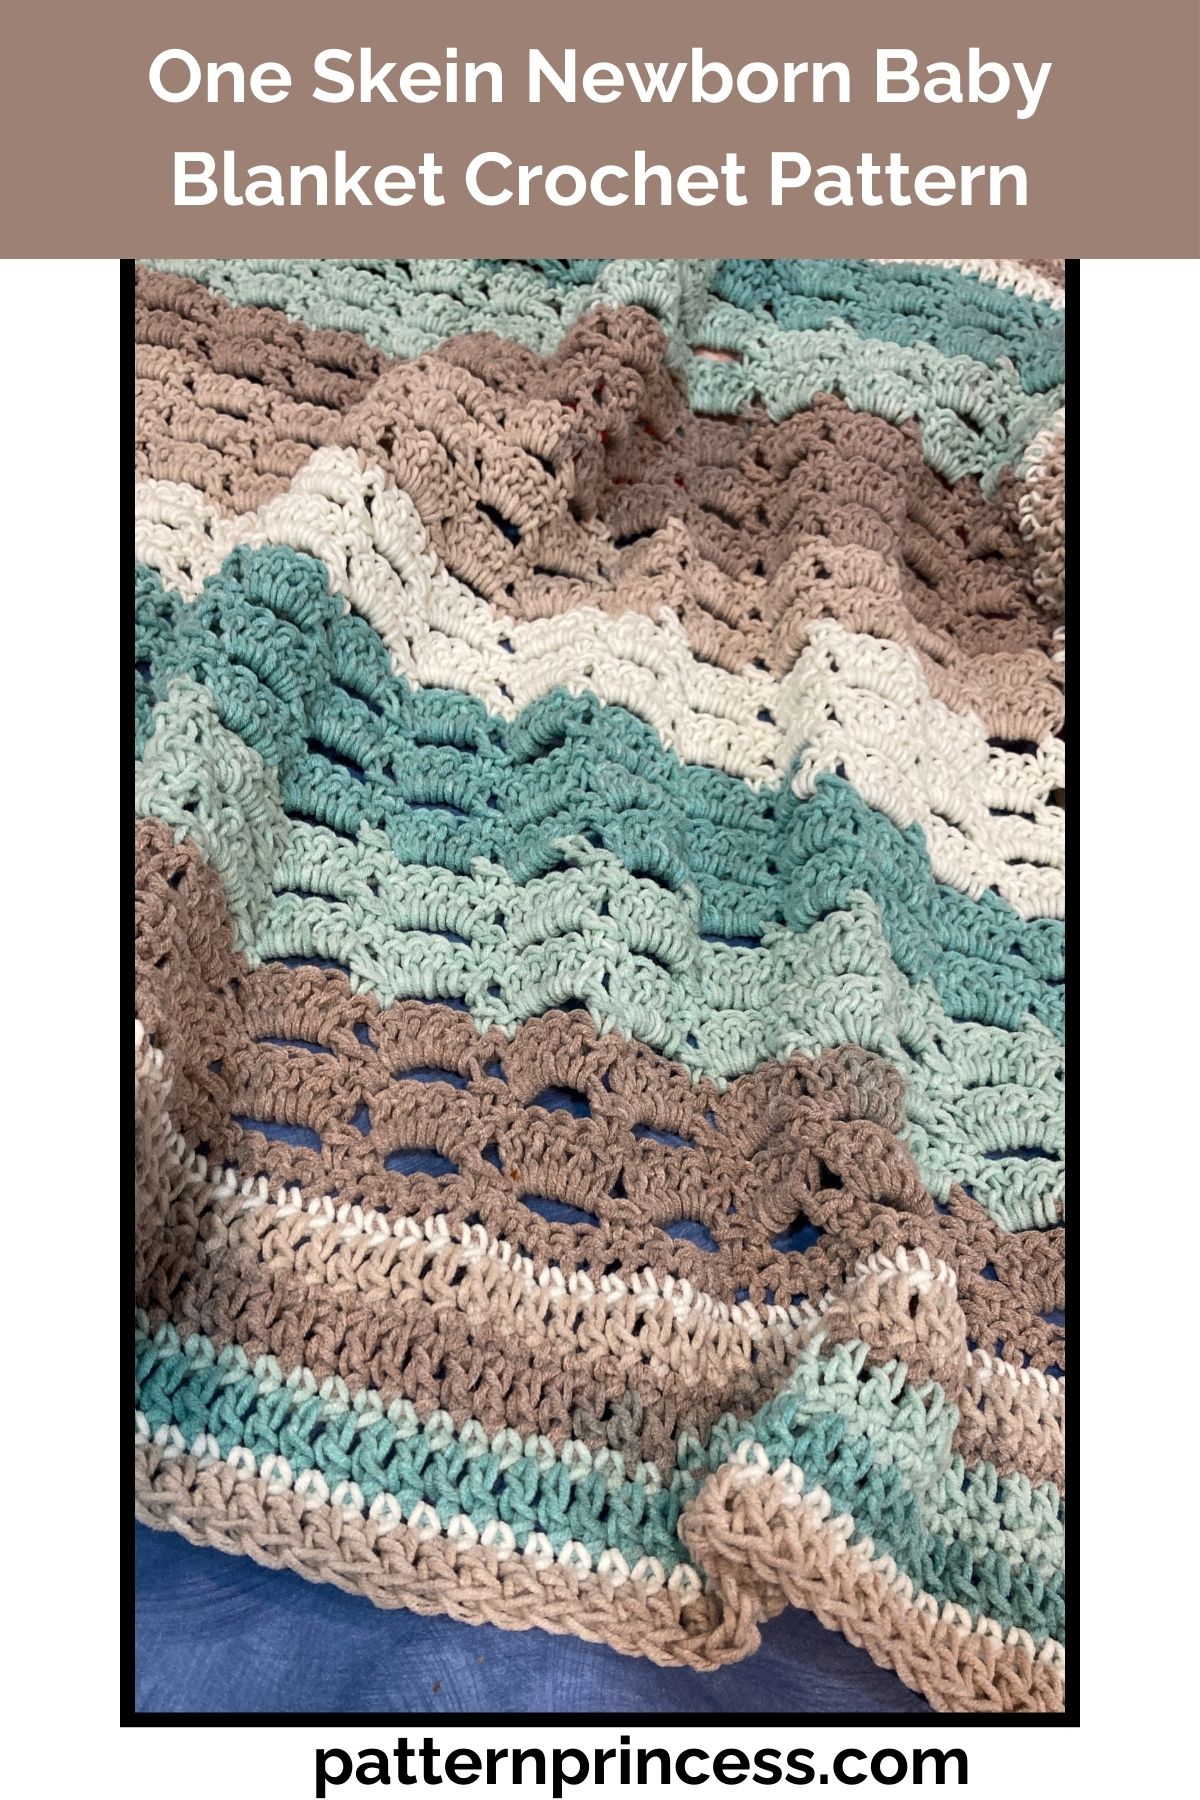 One Skein Newborn Baby Blanket Crochet Pattern